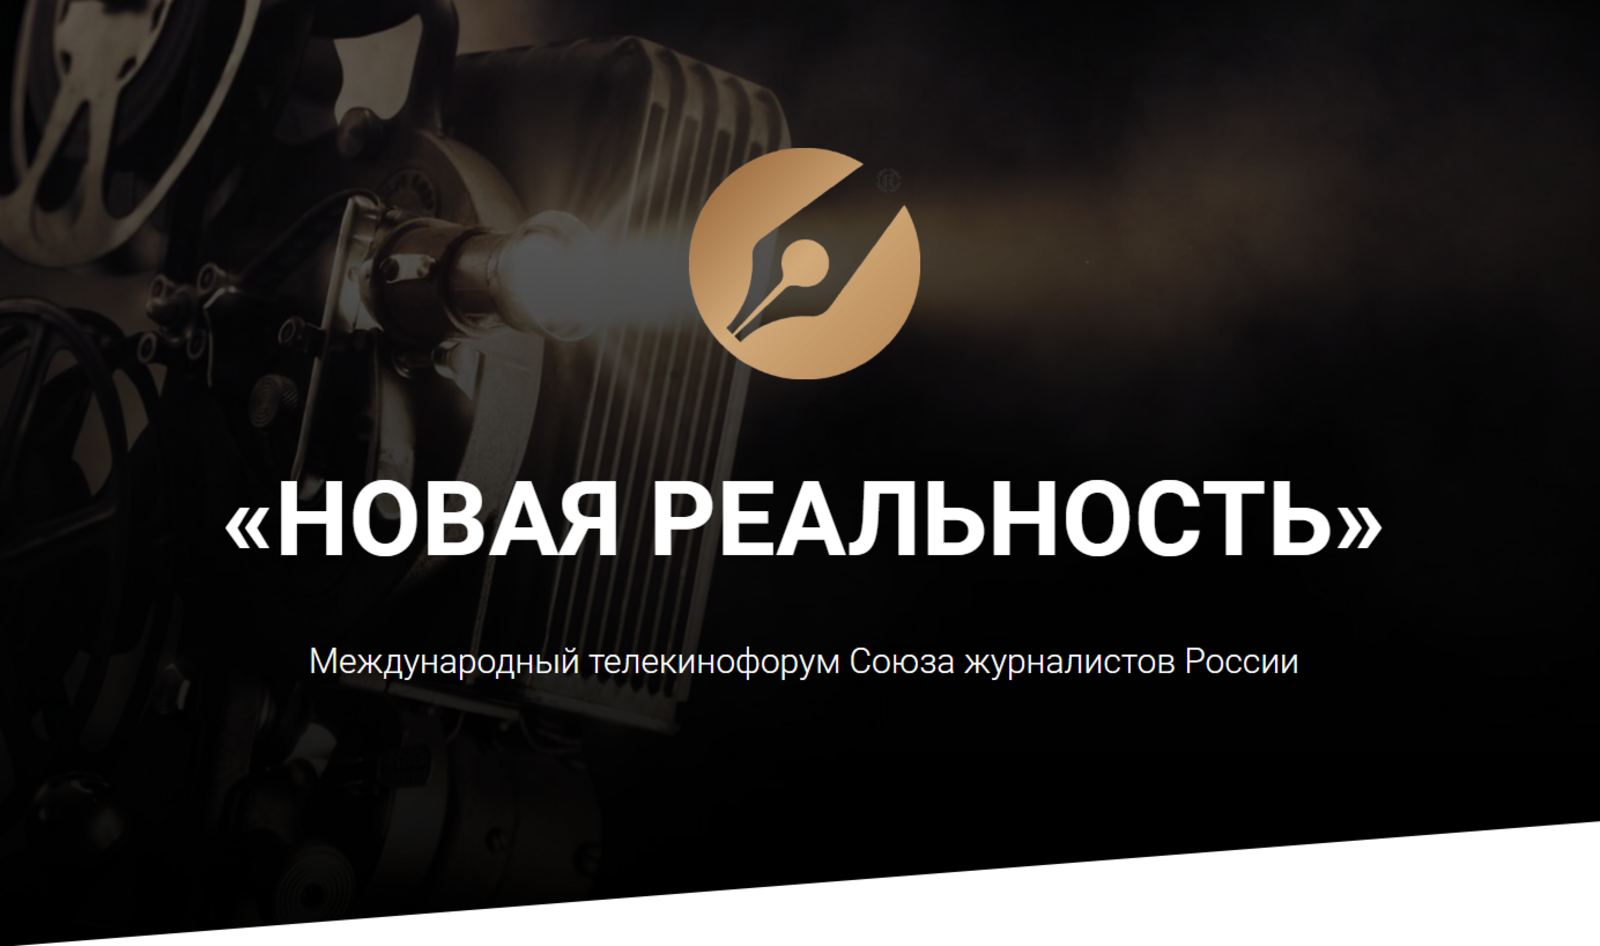 Начат прием заявок на участие в Телекинофоруме СЖР «Новая реальность»